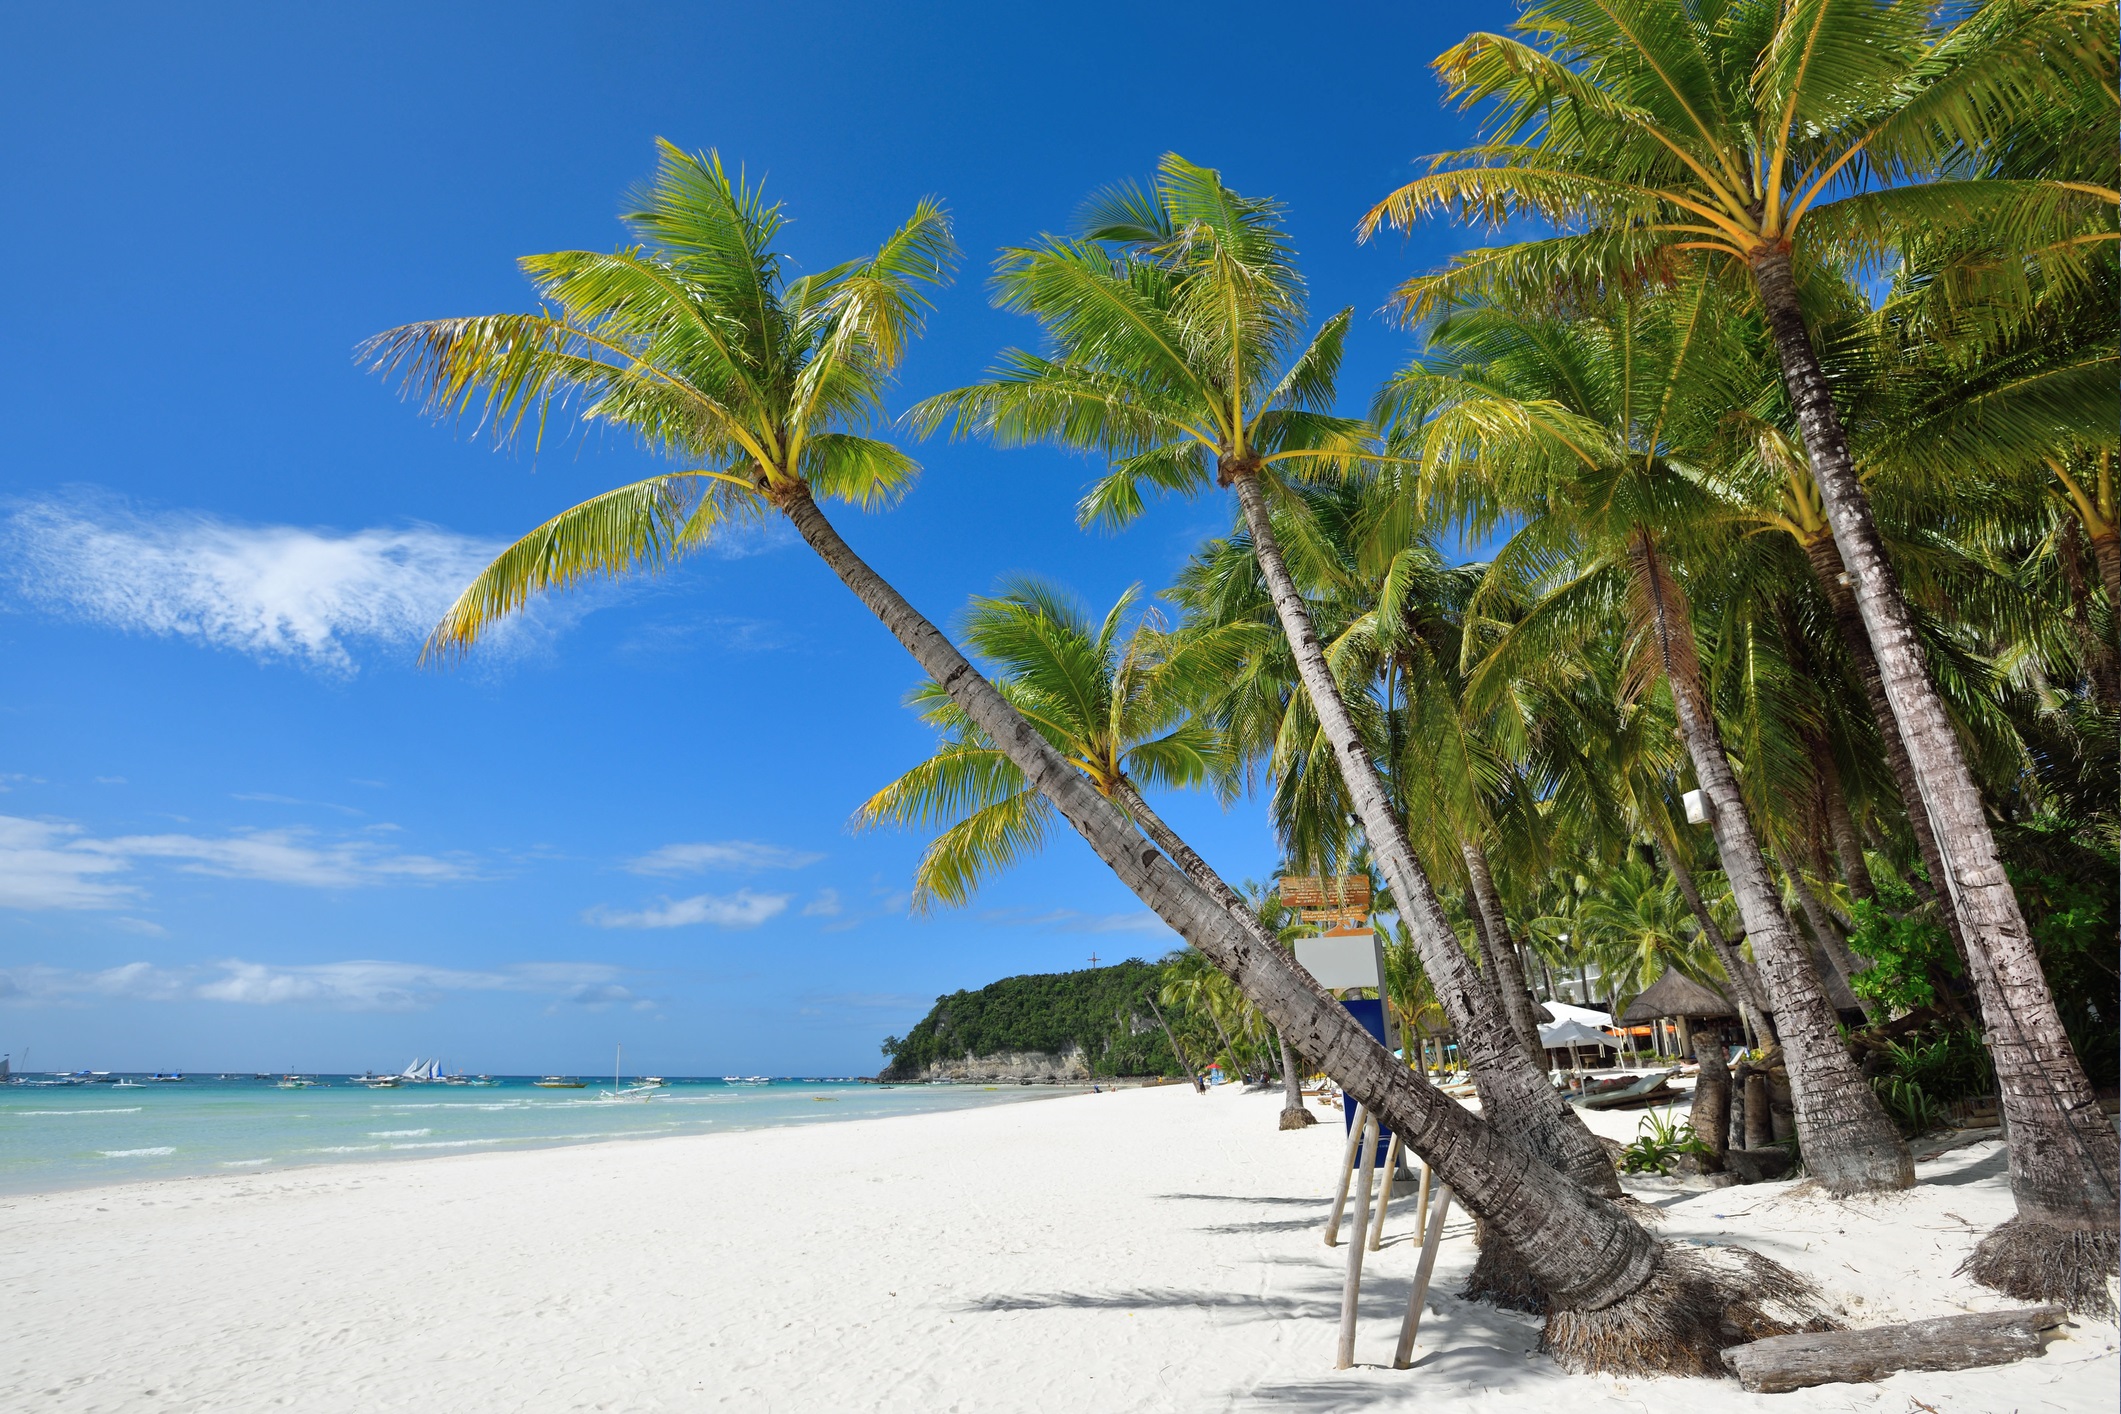 Белият плаж (остров Боракай) – спокойни топли води, бял пясък, идеалното място за почивка. Определян е като най-красивия плаж в Азия.